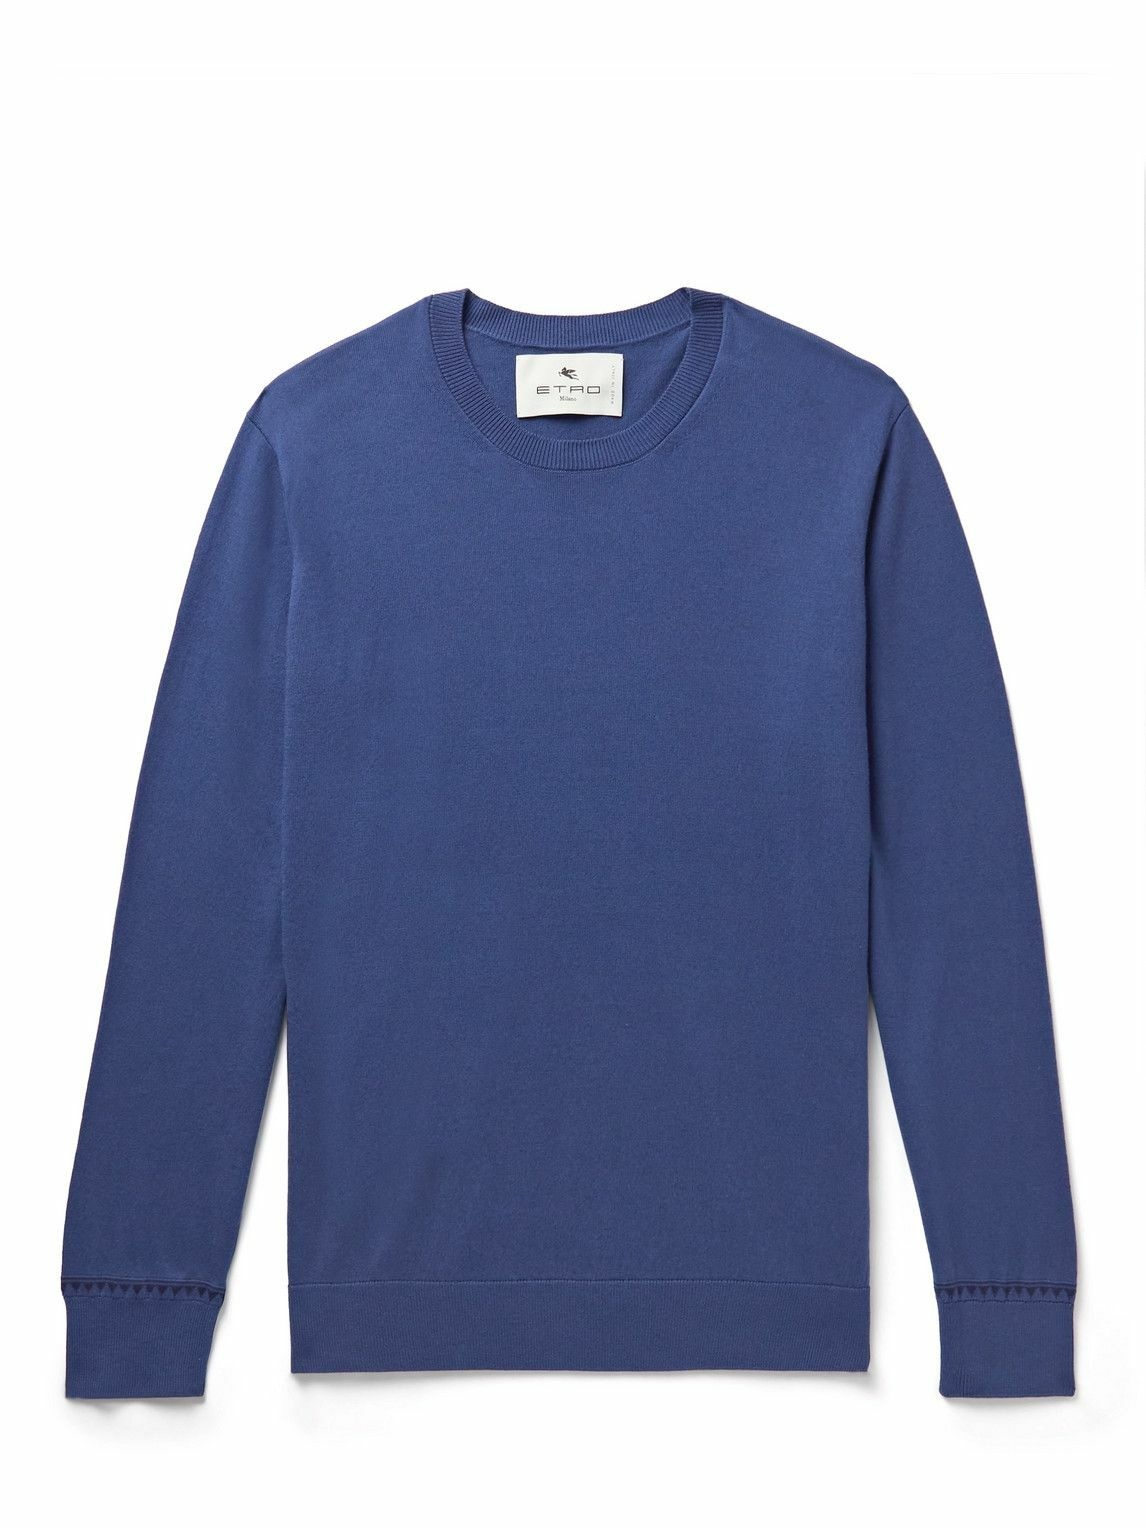 Etro - Cotton Sweater - Blue Etro